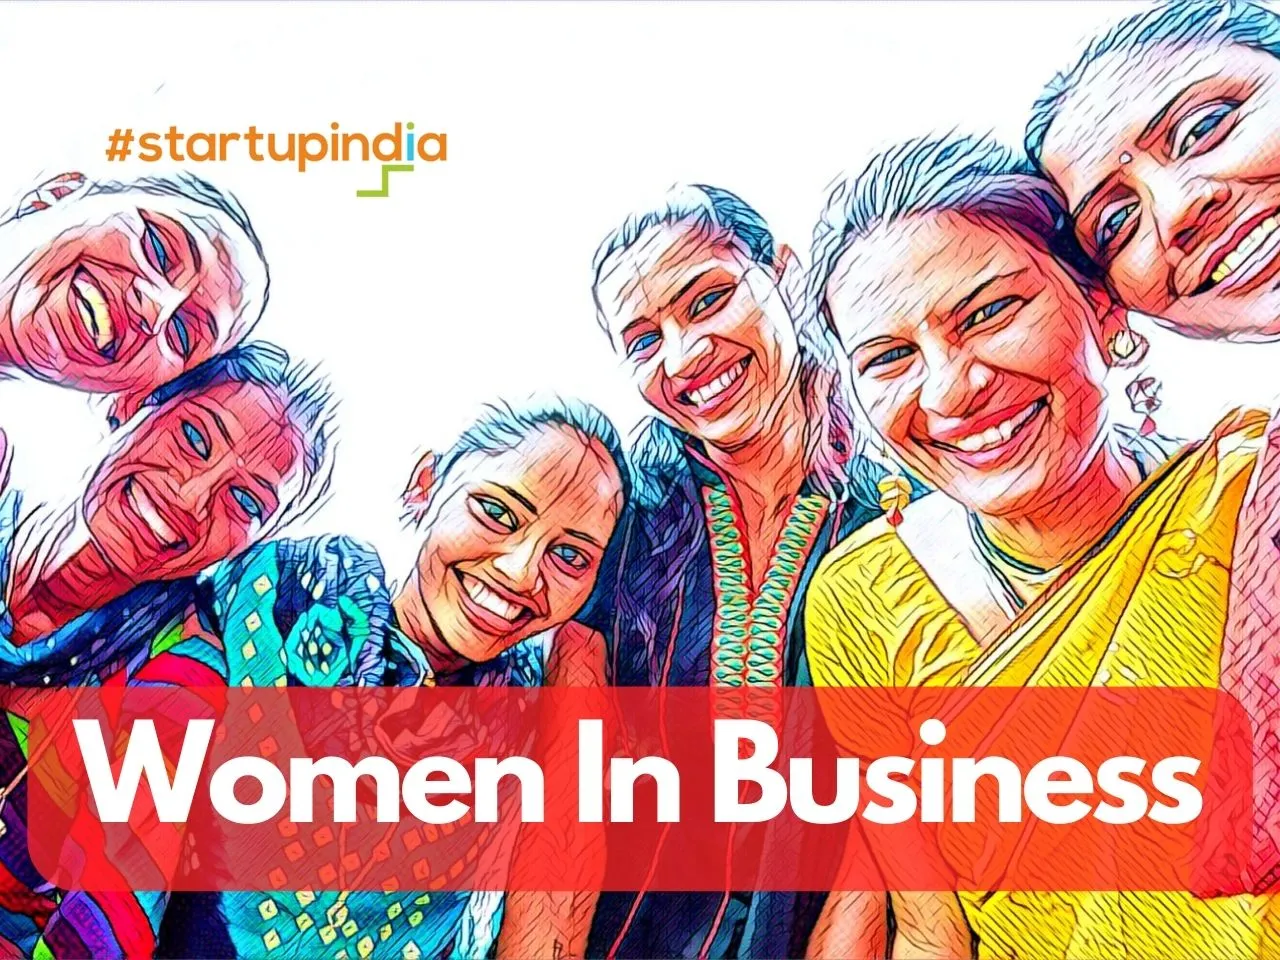 Smriti Irani Applauds Startup India Empowerment Women Business